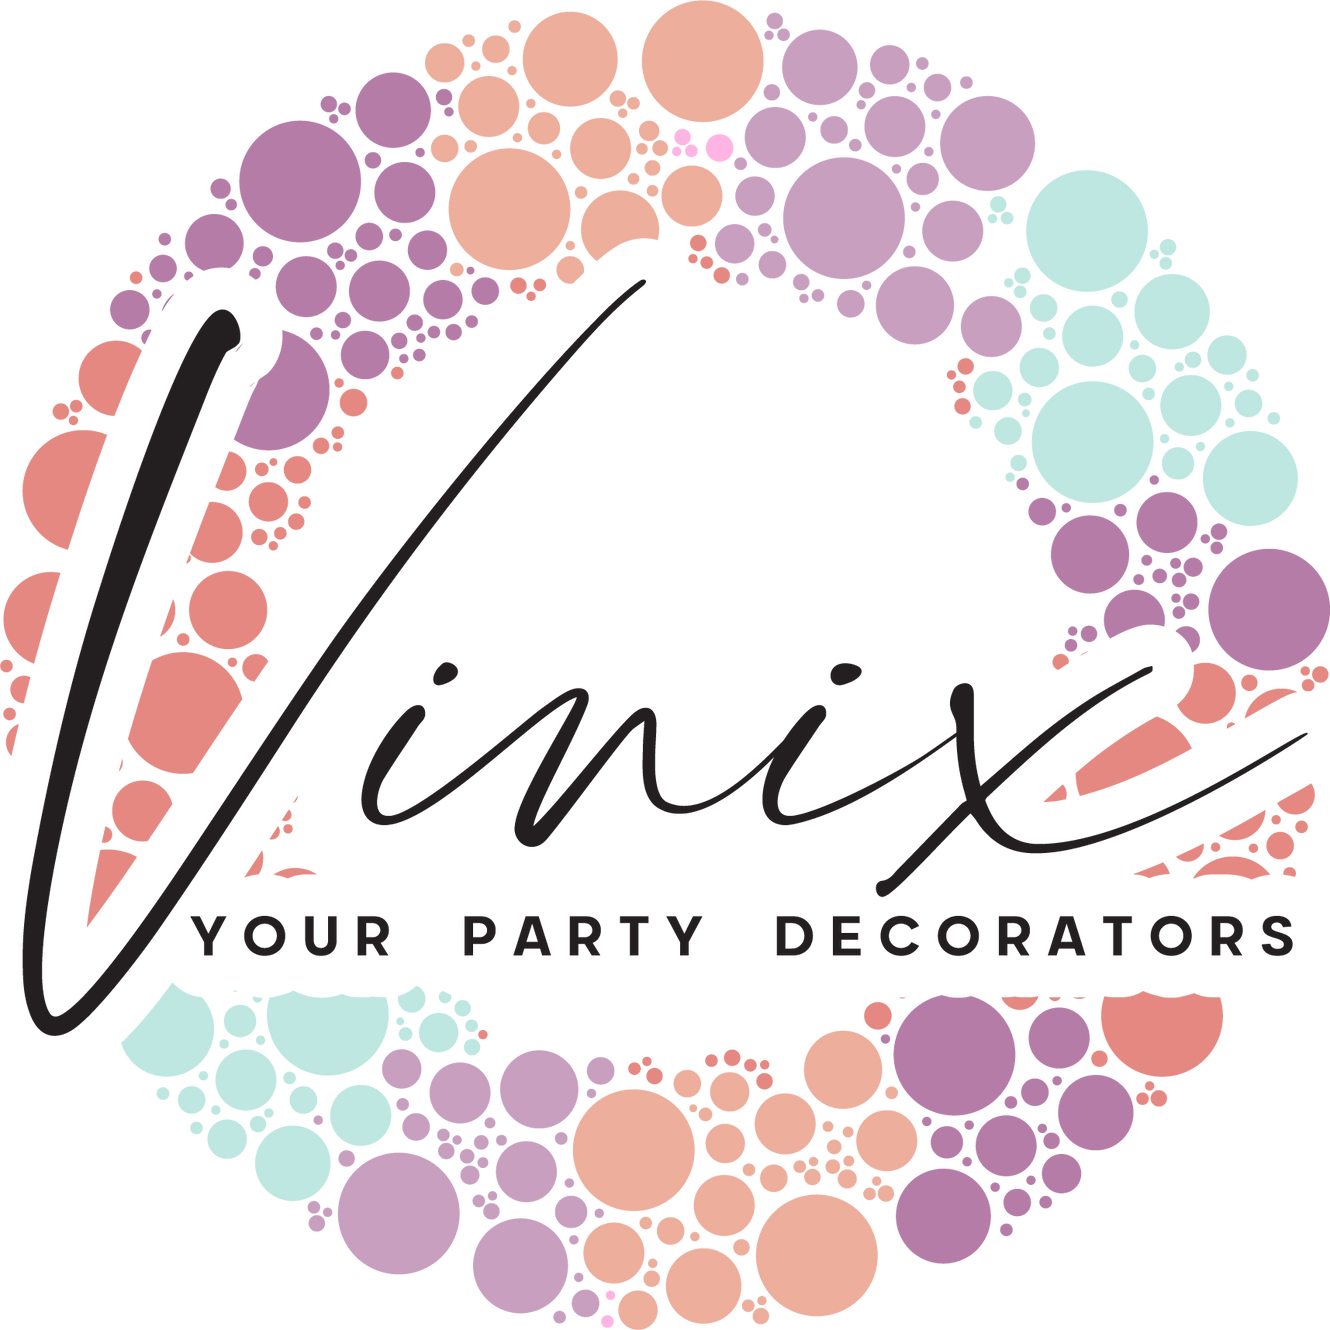 Vinix Party Decorators in Sydney – Vinix Party